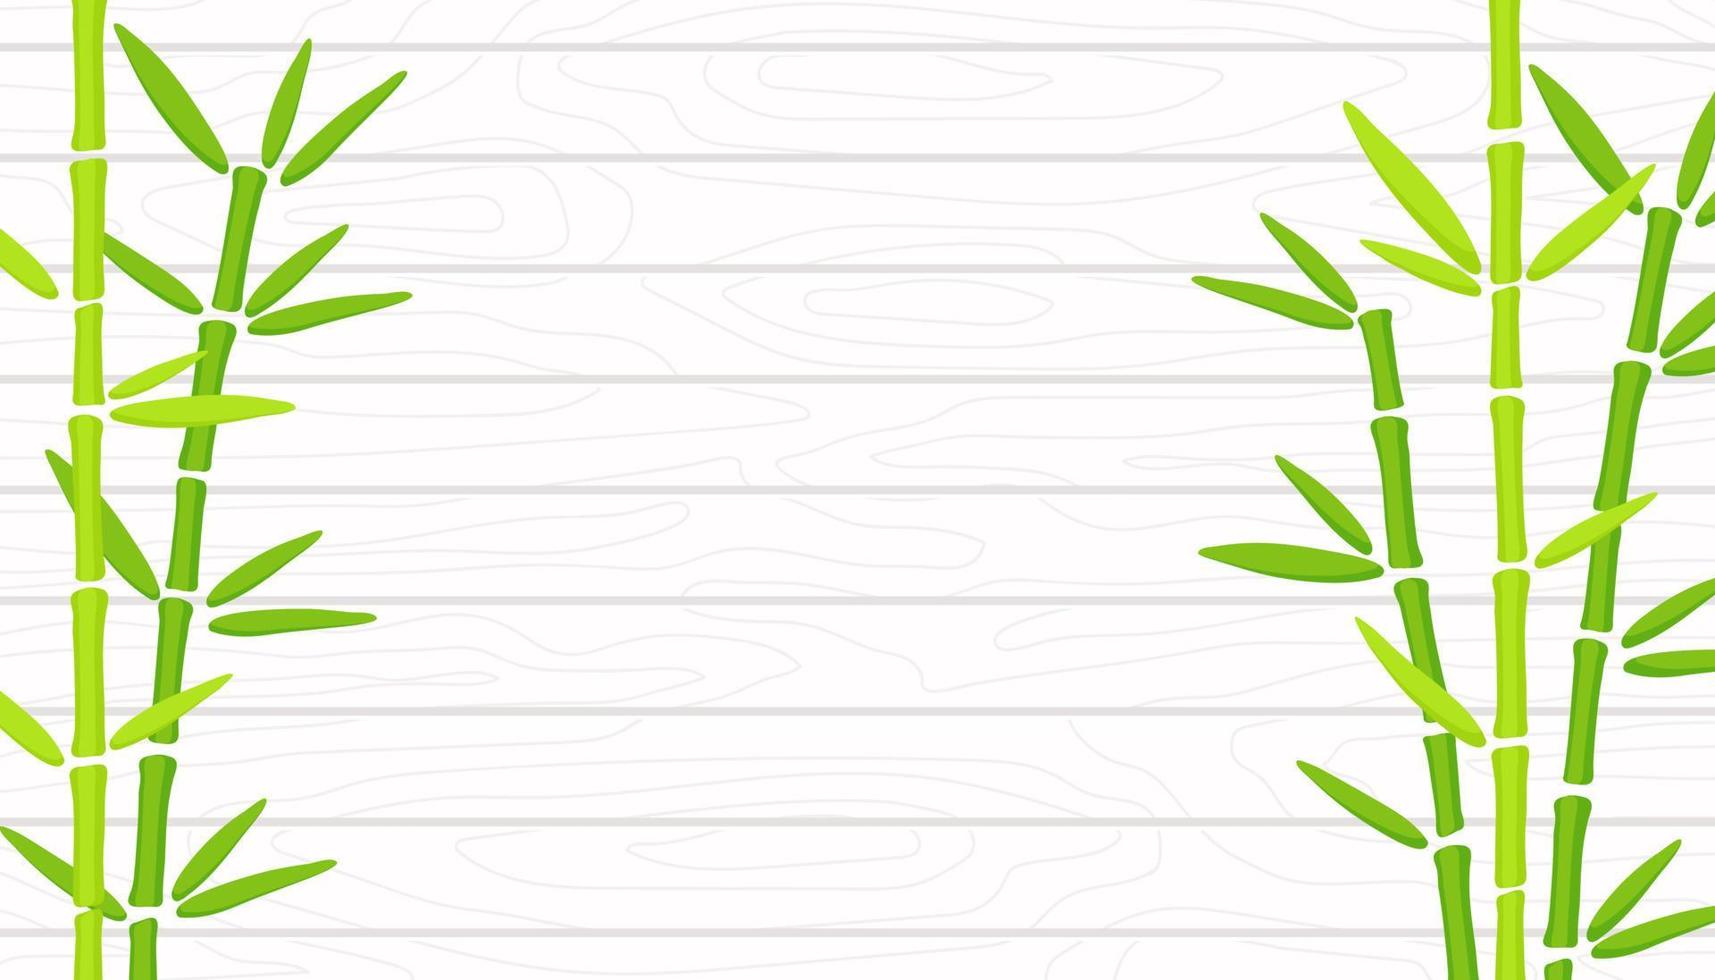 groen bamboegras op witte houten textuurachtergrond. hand getekend oosterse chinese plant vectorillustratie. sjabloon met kopieerruimte vector